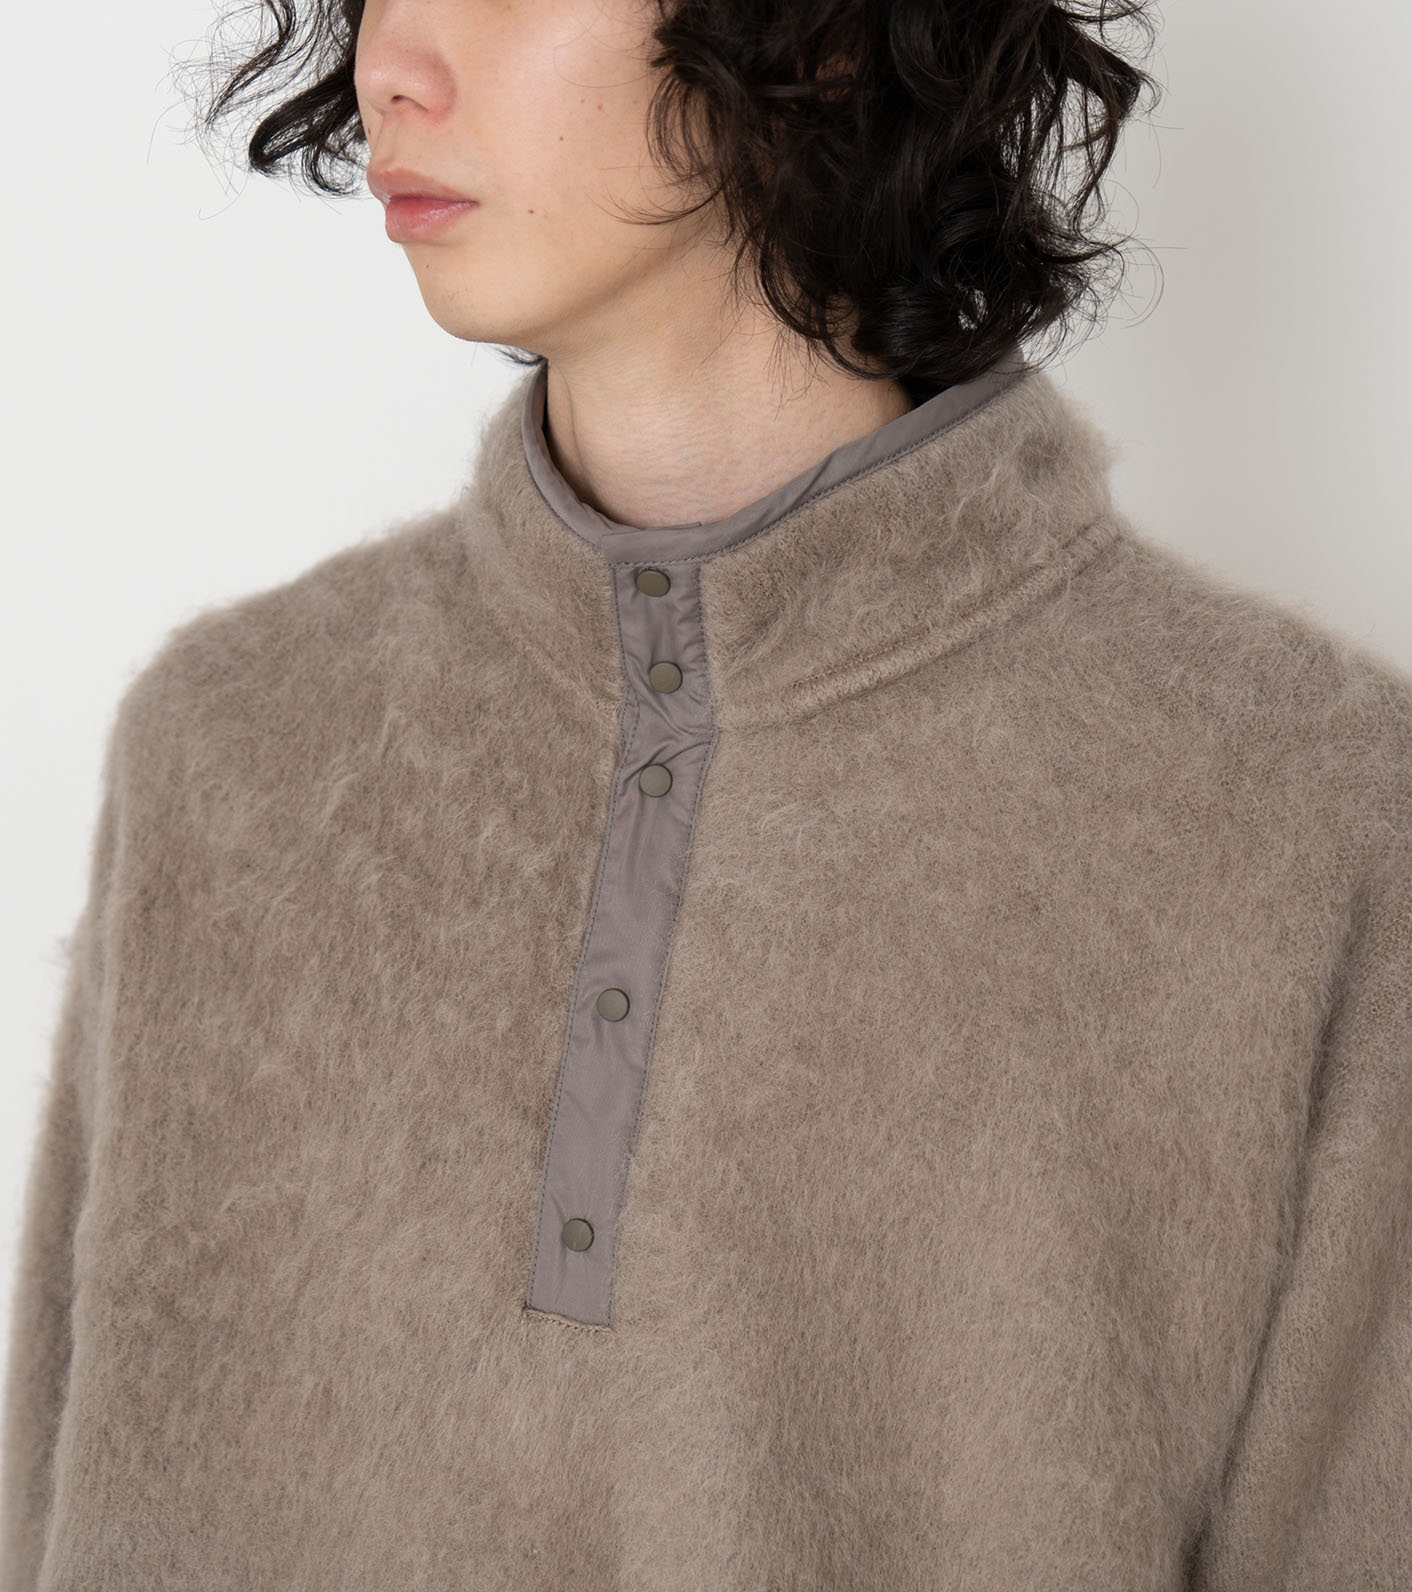 nanamica / Pullover Sweater